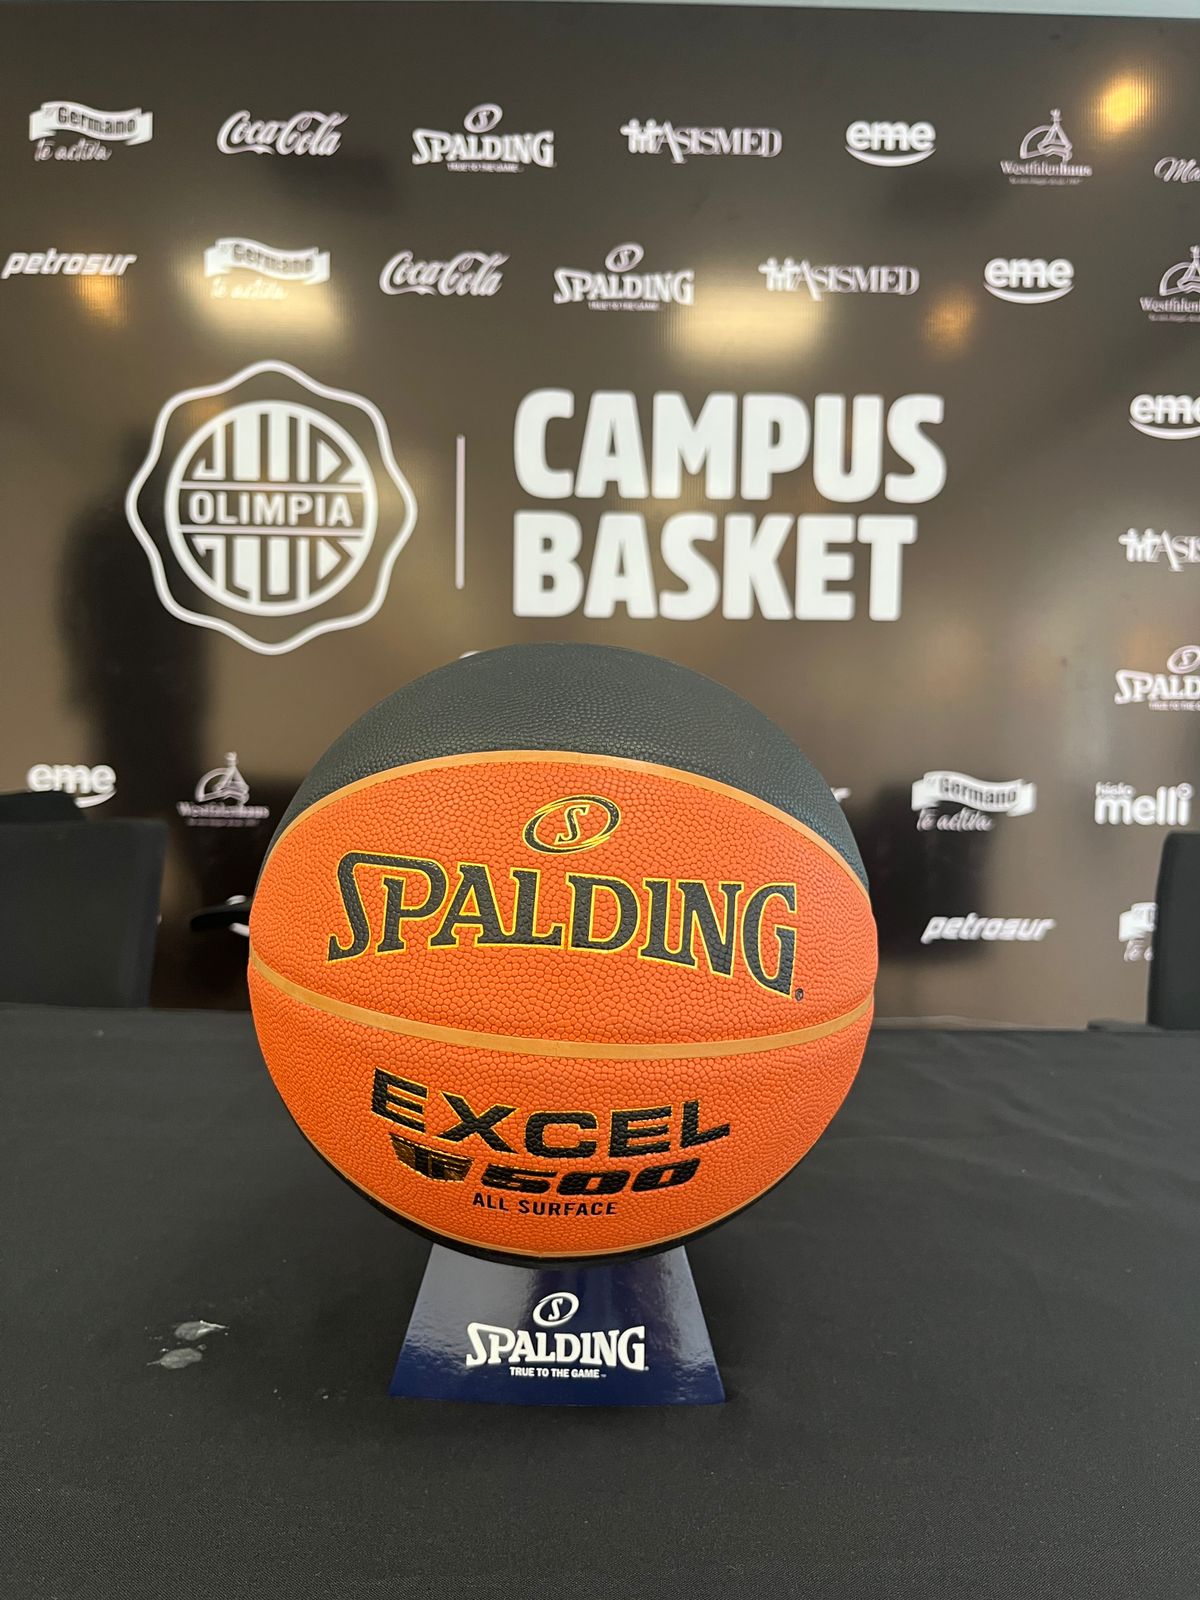 Spalding acompaña el Campus del Olimpia